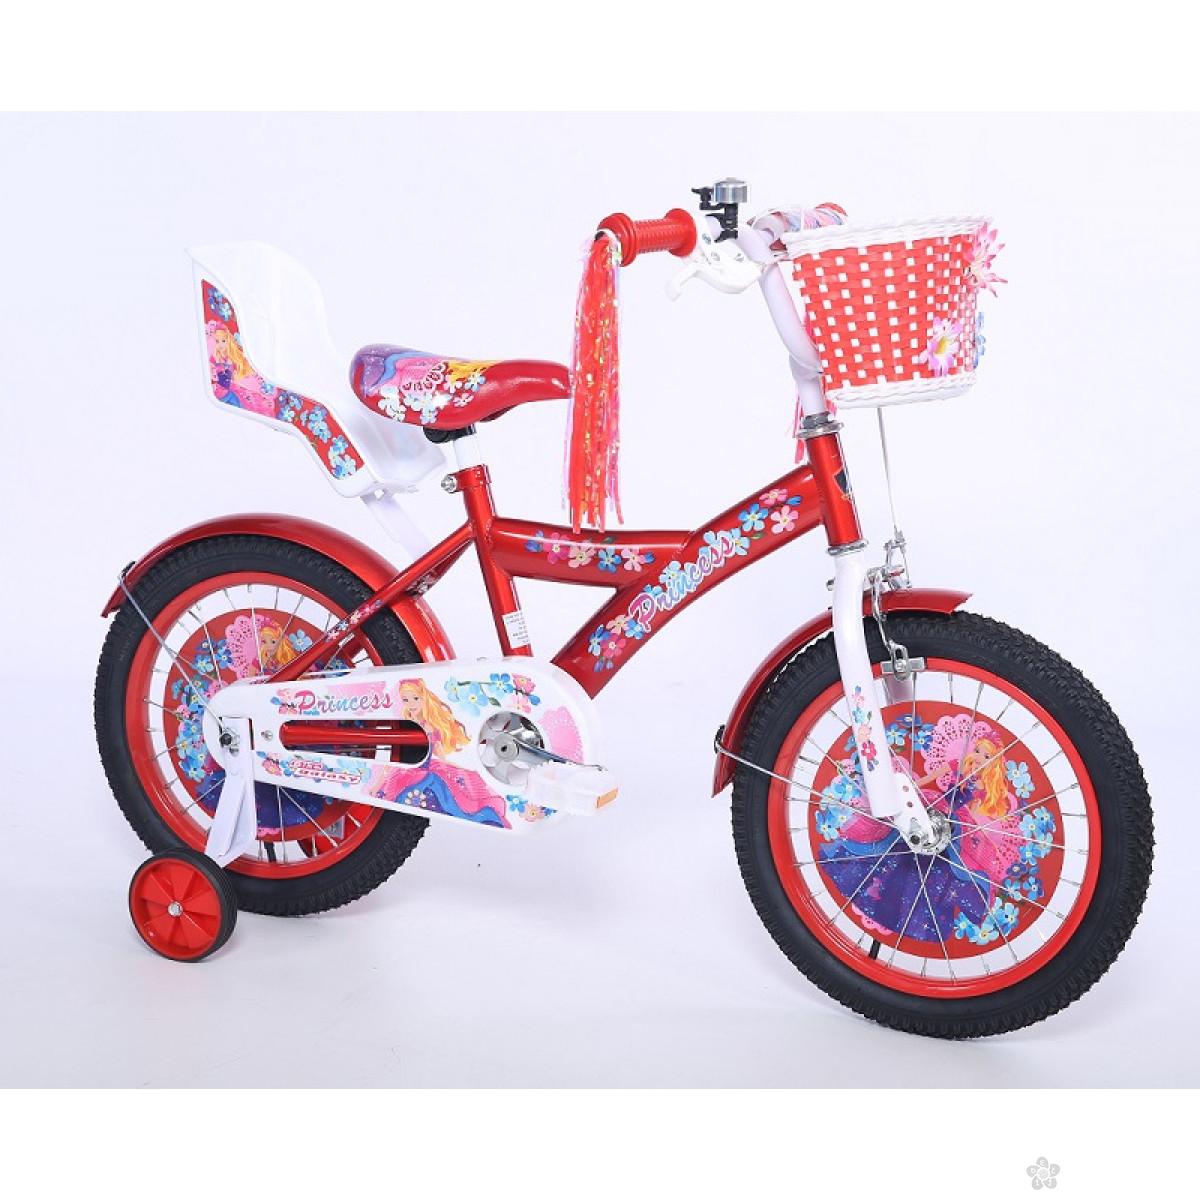 Dečiji Bicikl Princess 16 crvena/bela, 460121 